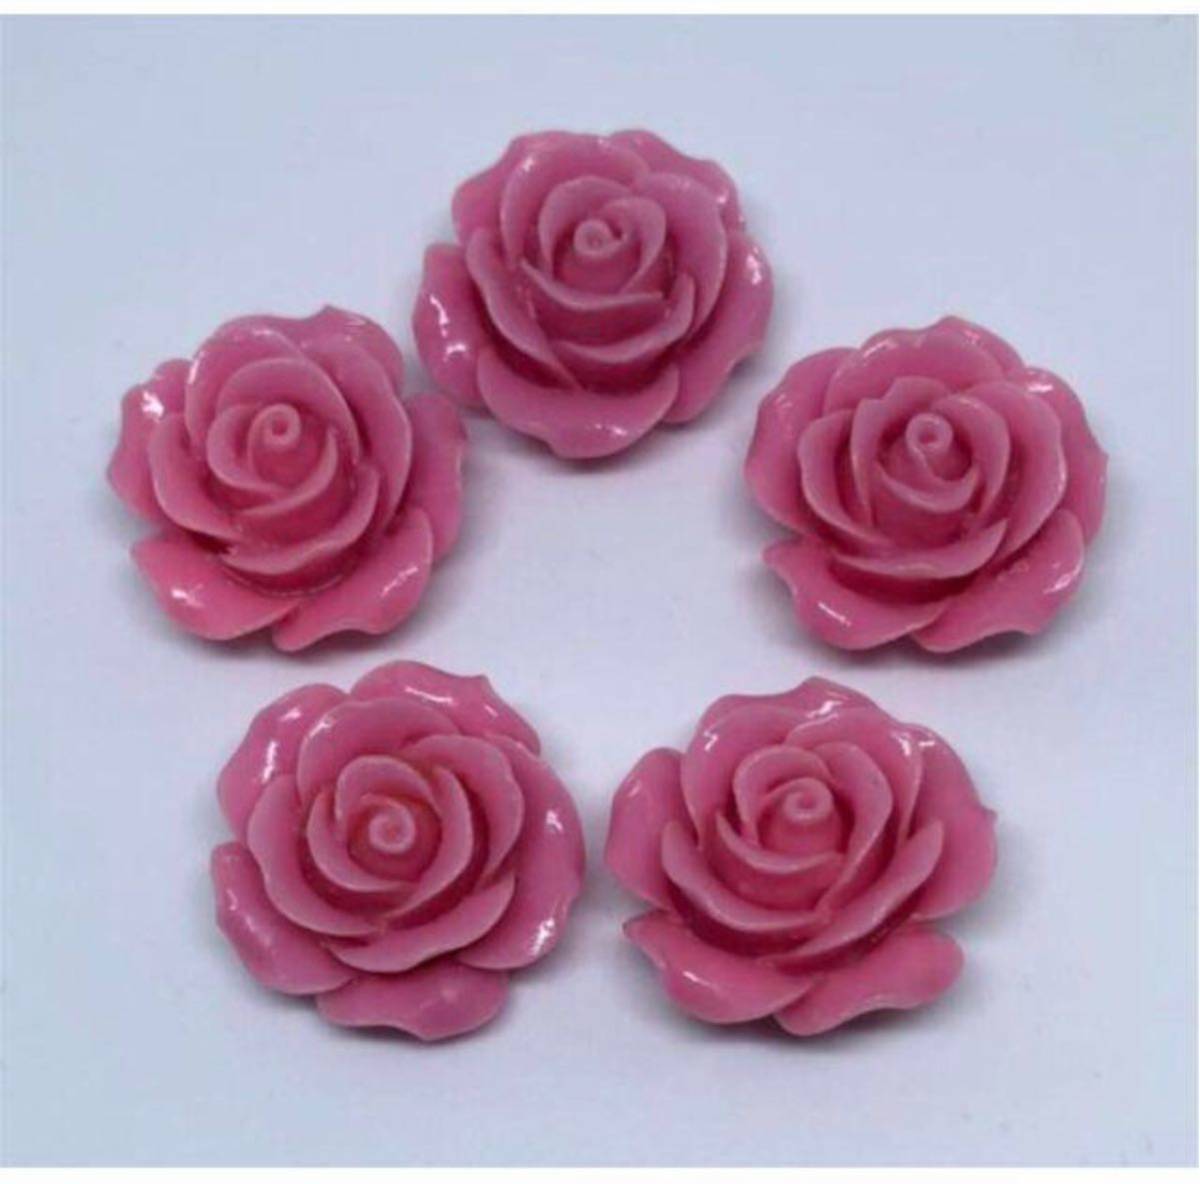 送料込 5粒組 美しい バラ 薔薇 ビーズ パーツ ハンドメイド 素材 ピンク 新品